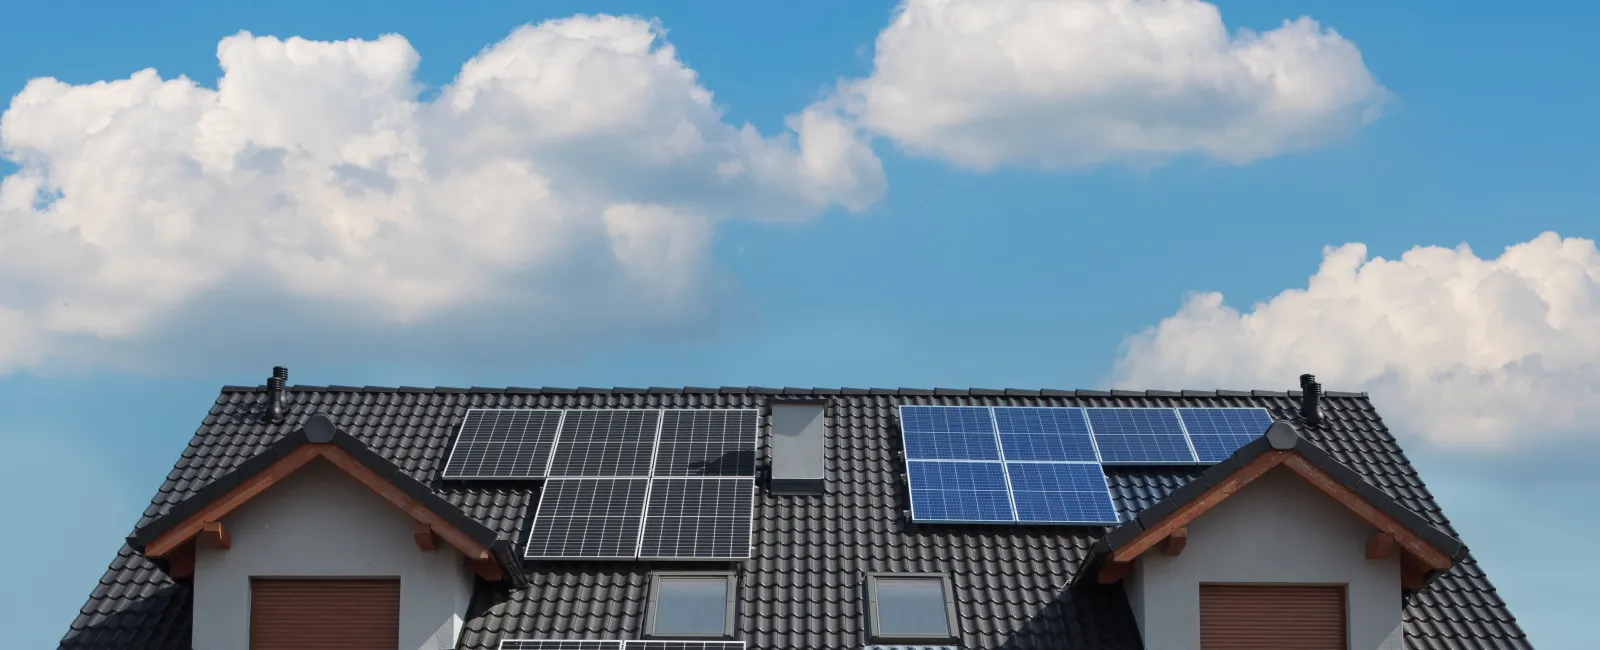 a row of solar panels on a house